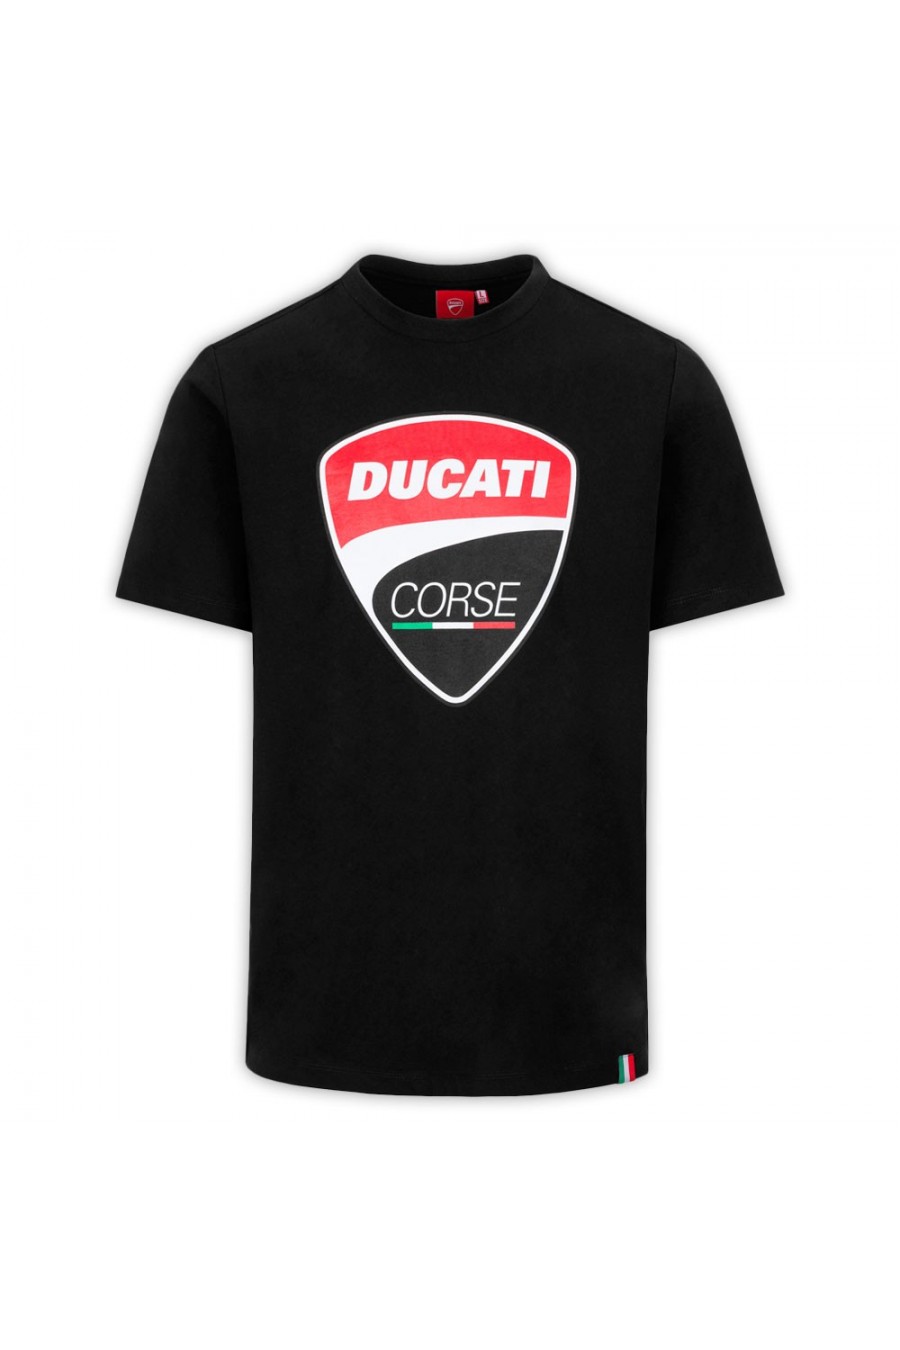 Ducati Corse T-Shirt Schwarz